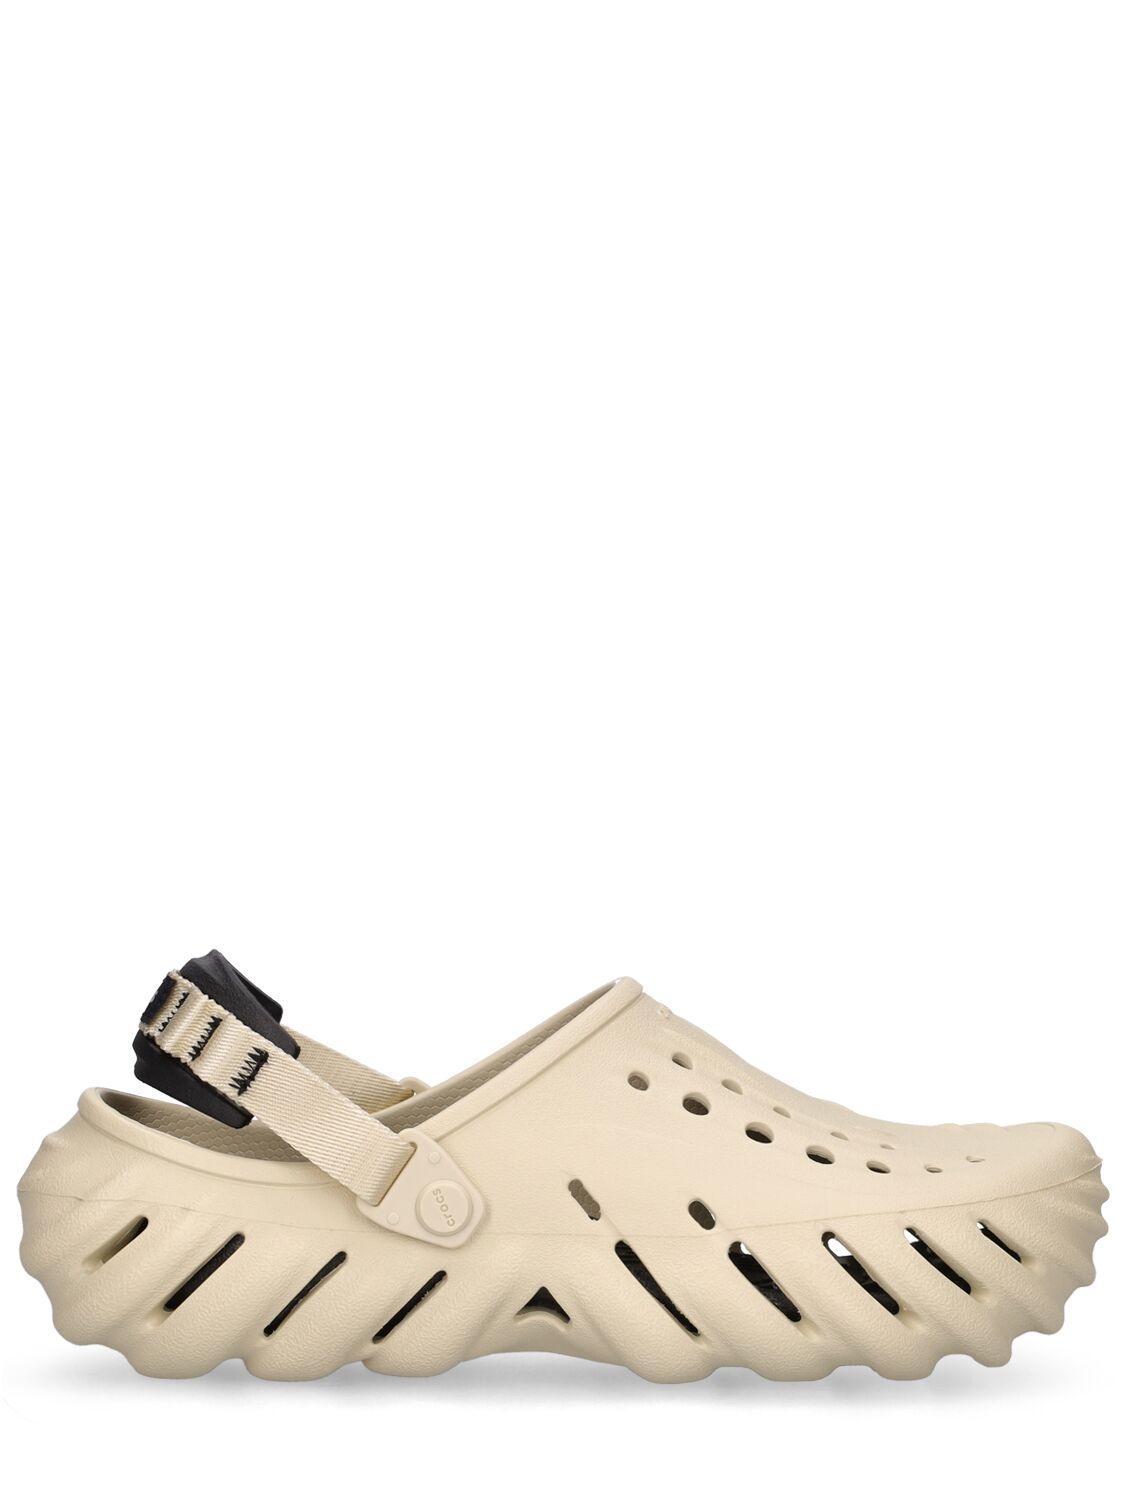 Crocs Echo沙滩鞋 In Beige,black